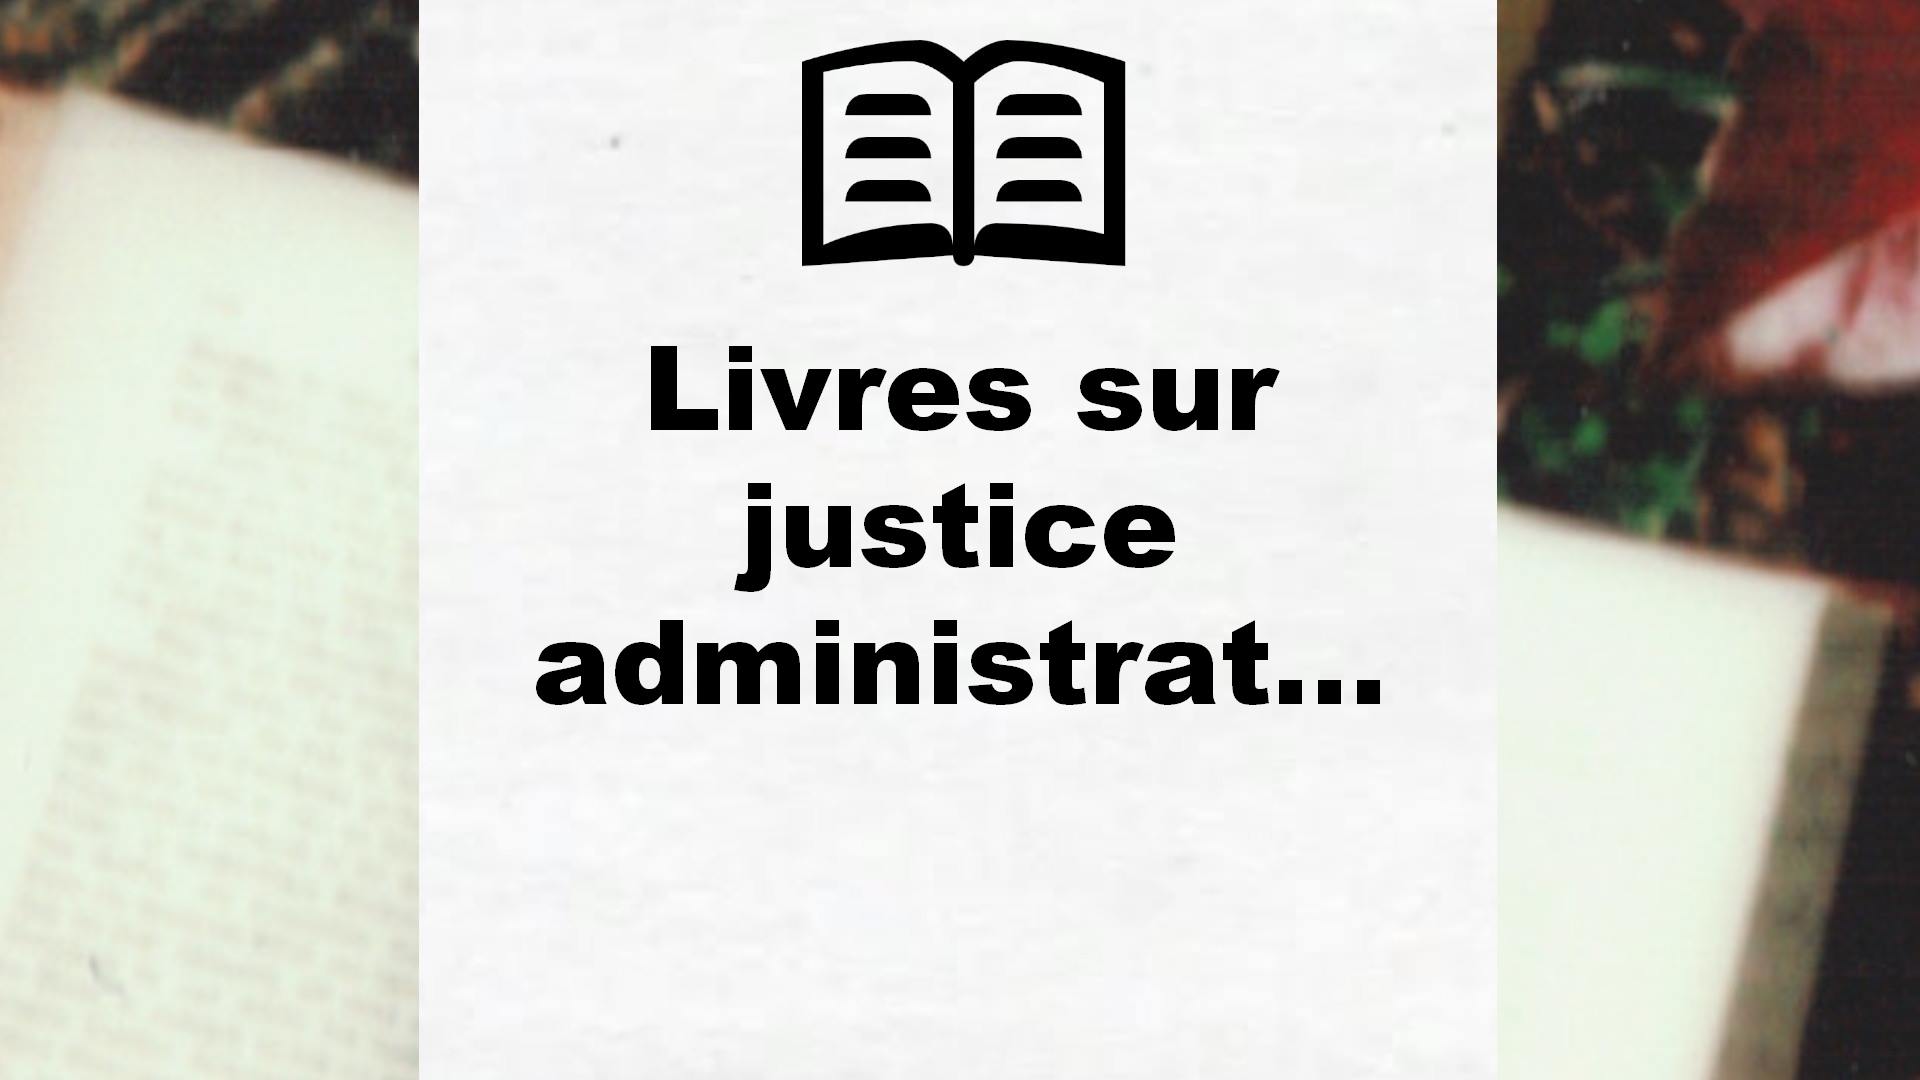 Livres sur justice administrative